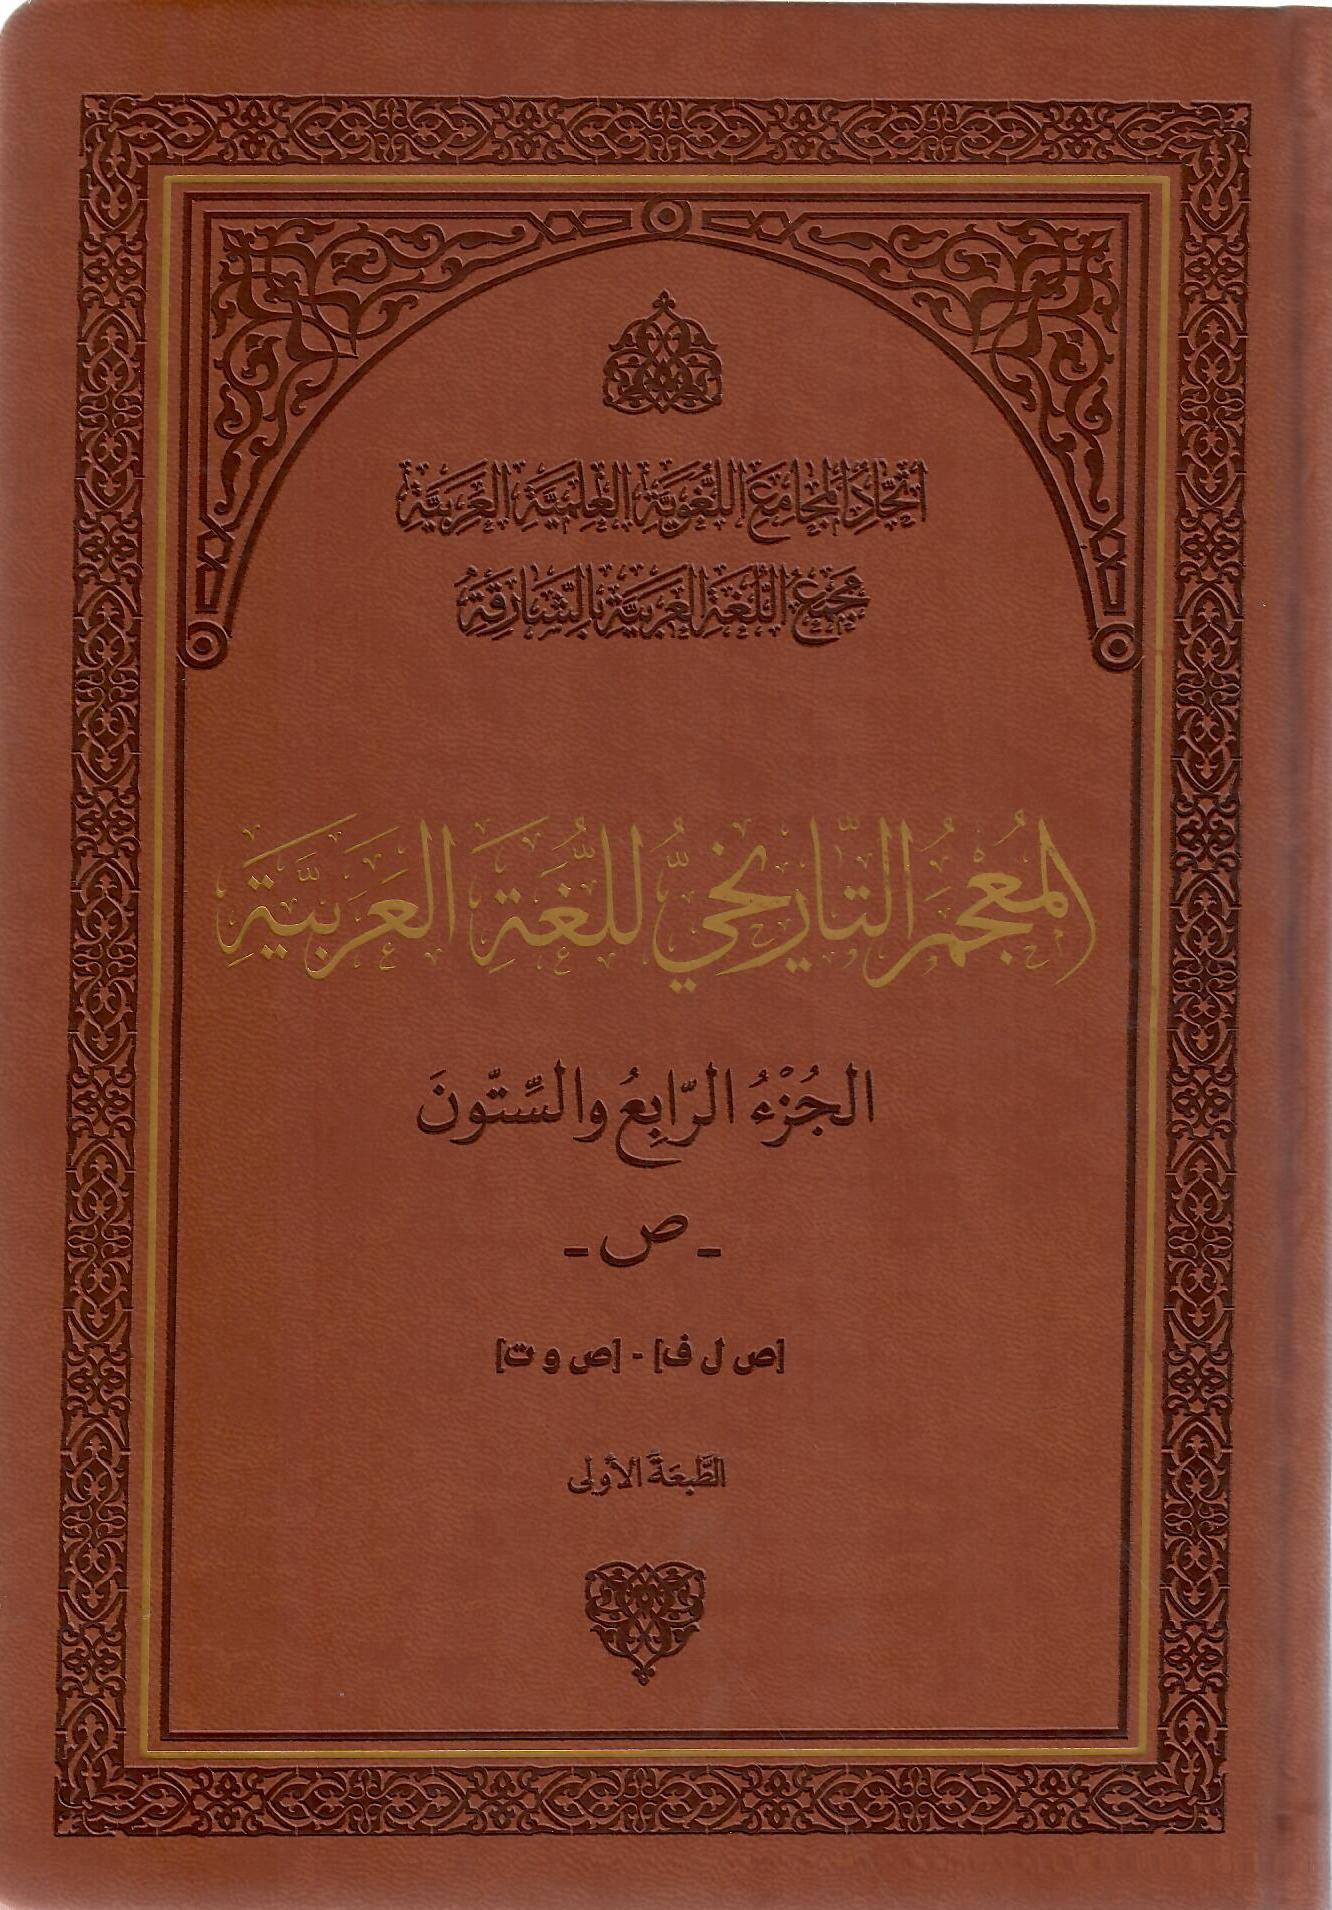 المعجم التاريخي للغة العربية الرابع والستون